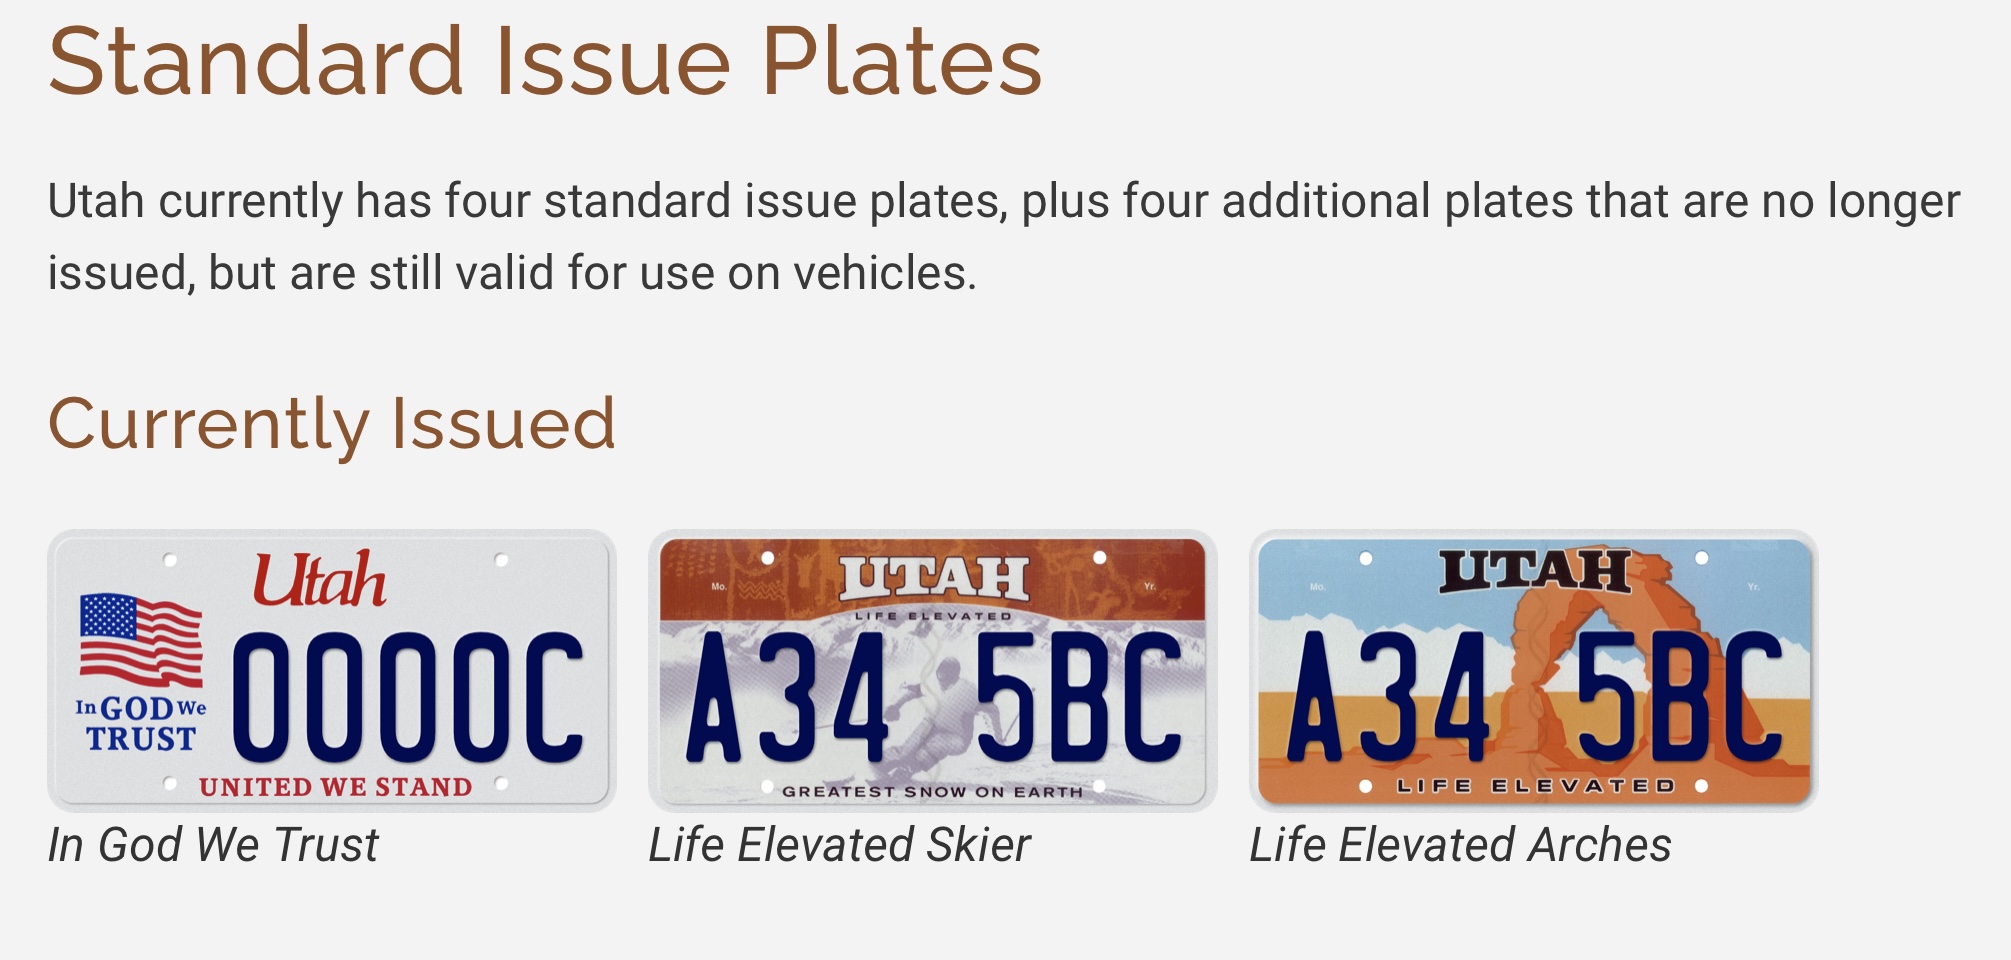 GR8 PL8: Utah's retro license plate hits a home run